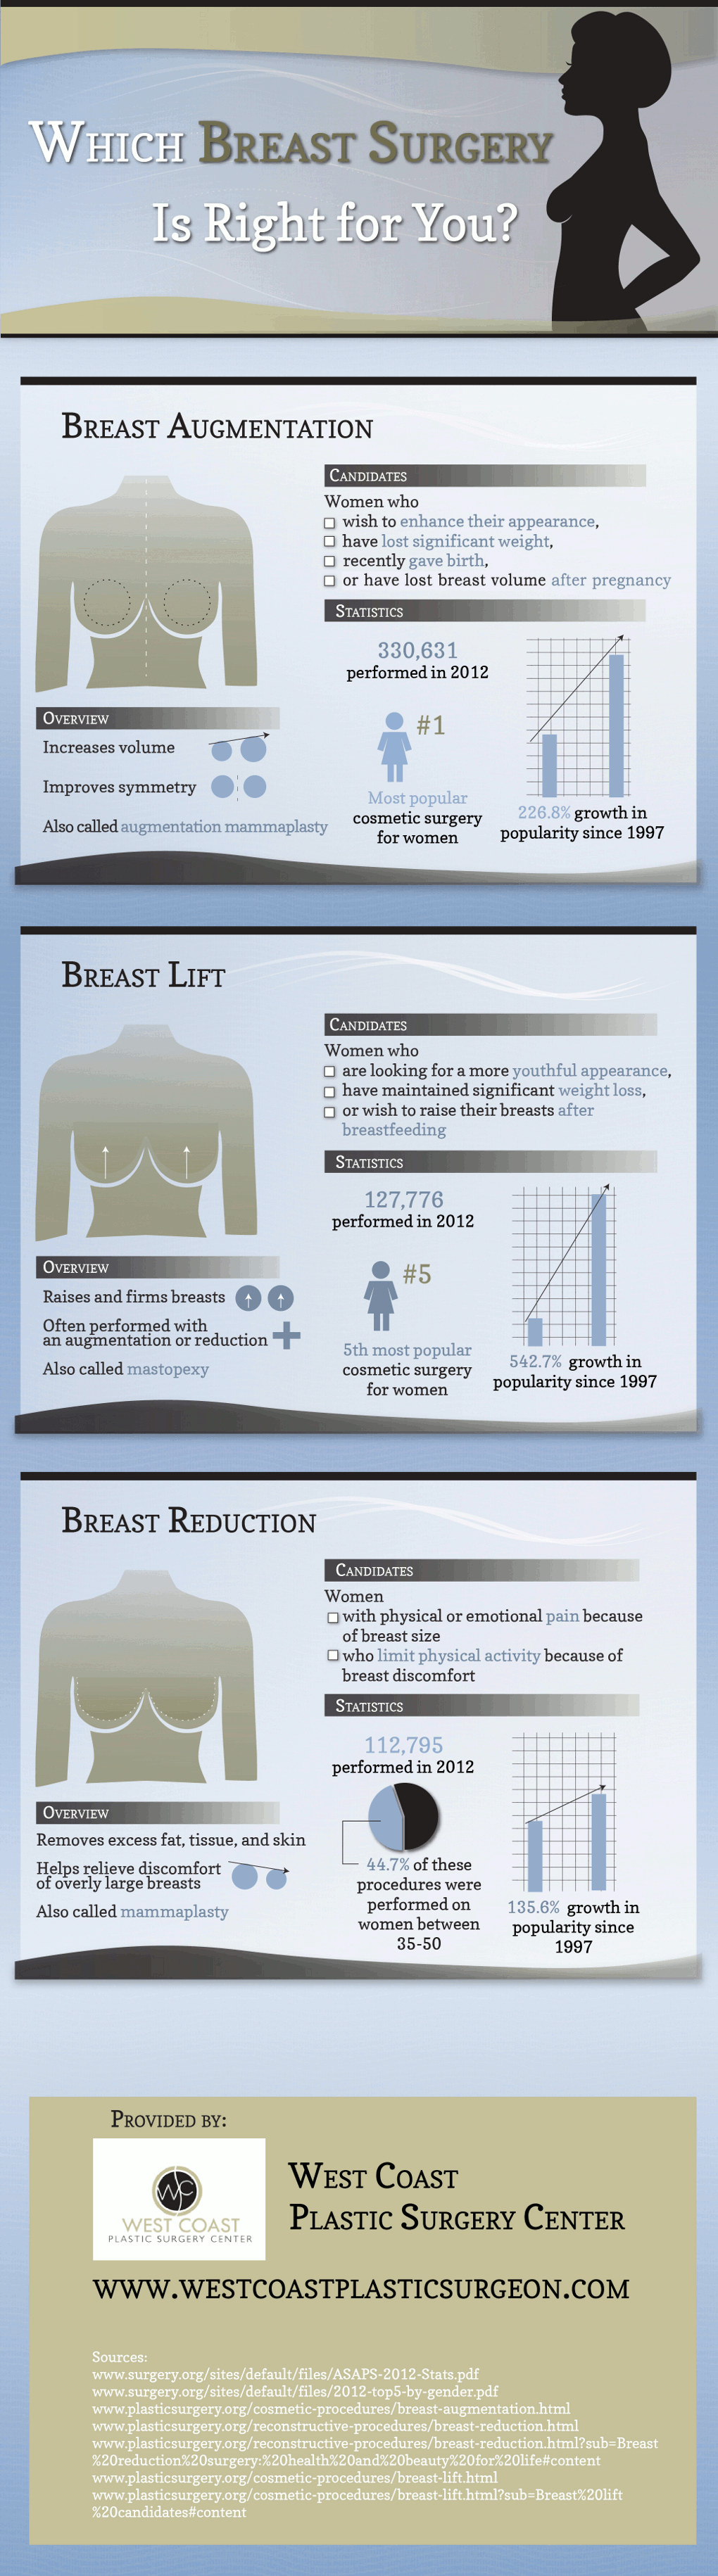 Breast Surgery Comparison